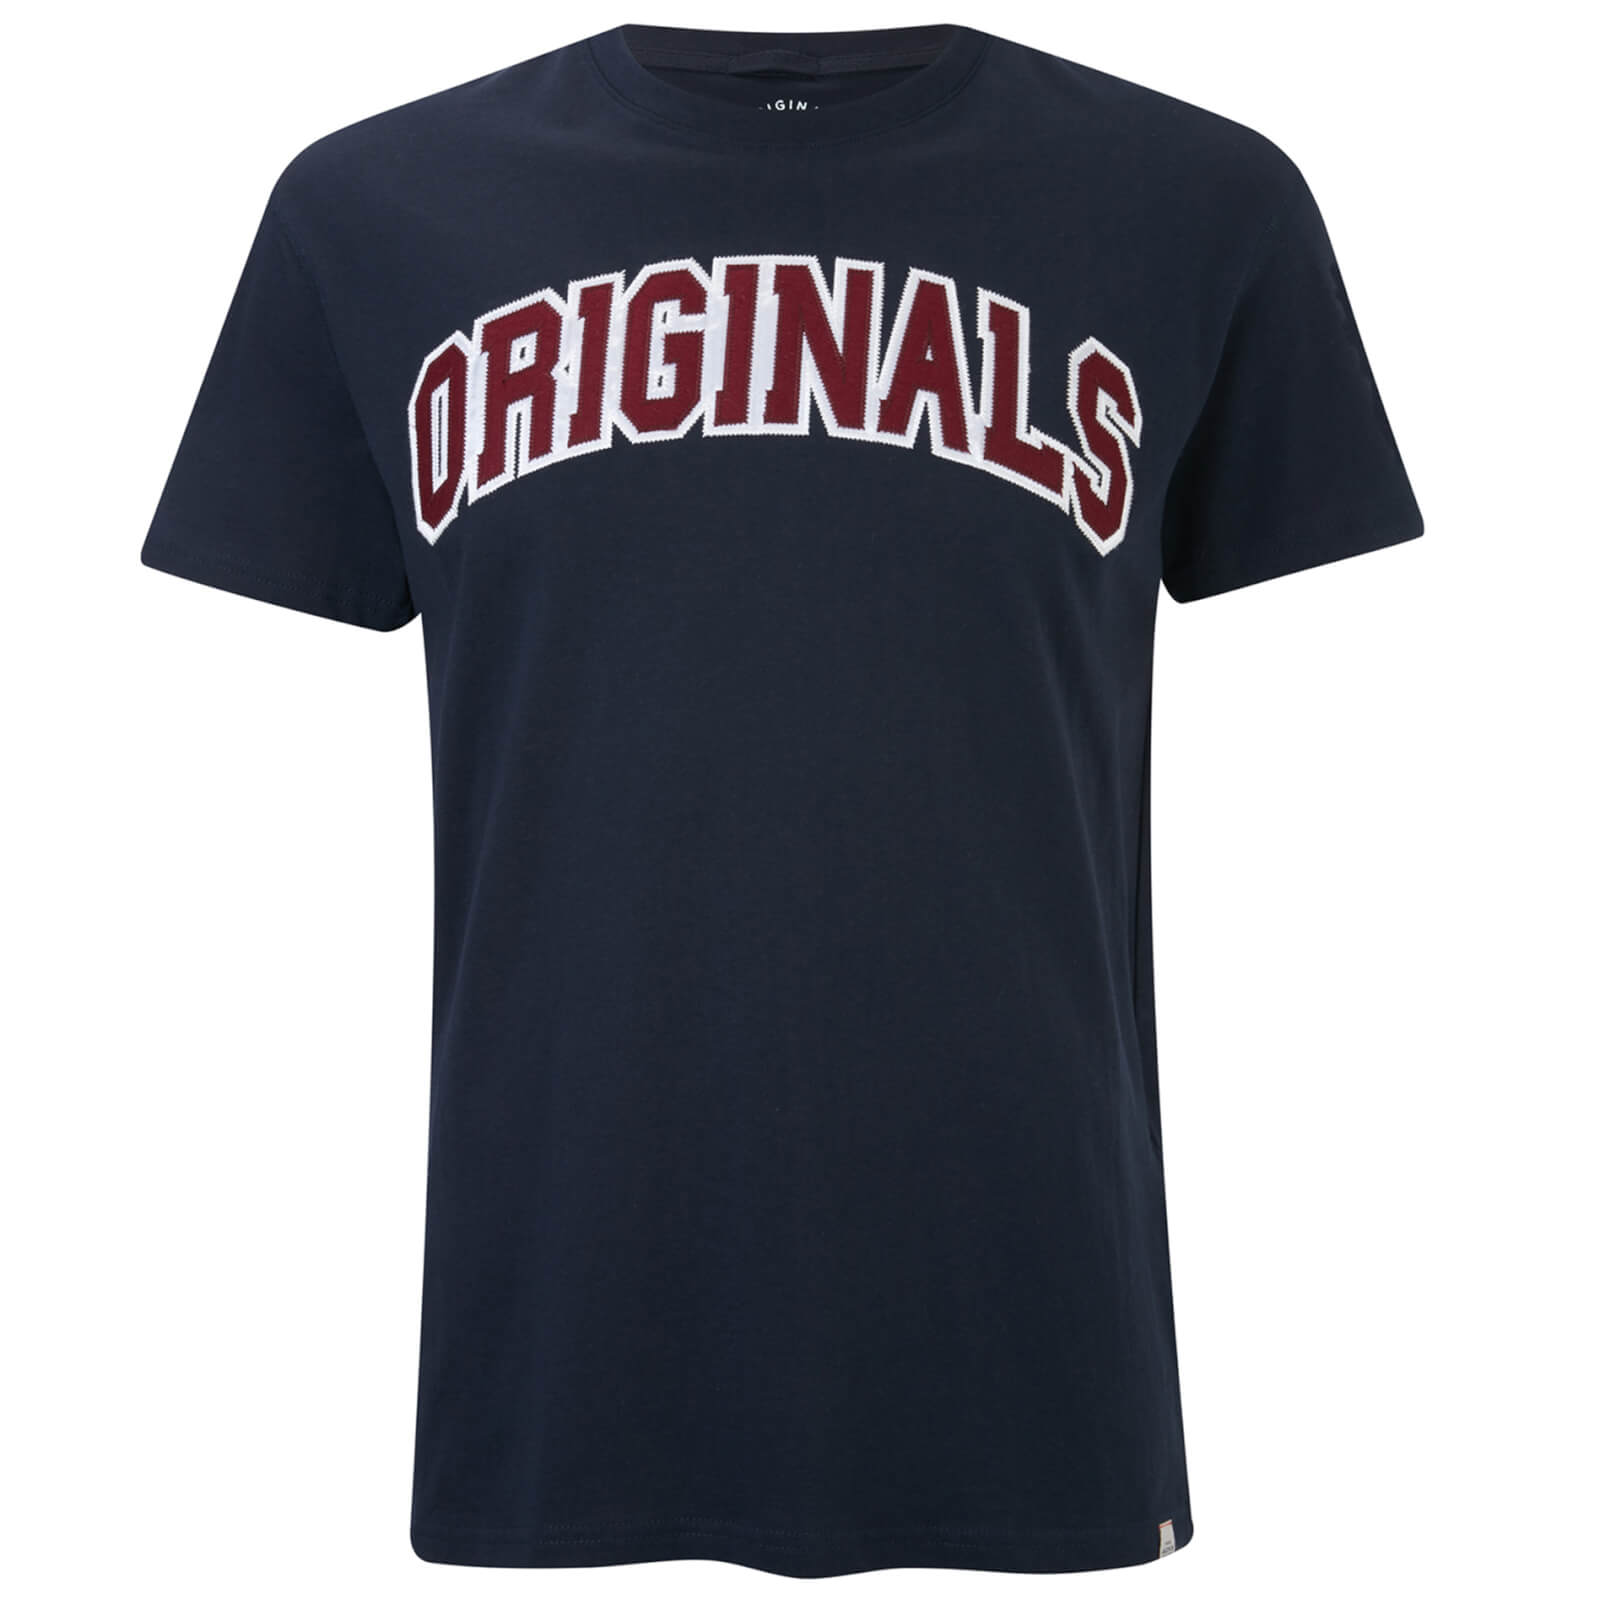 Jack & Jones Originals Men's Urbia T-Shirt - Total Eclipse - XL